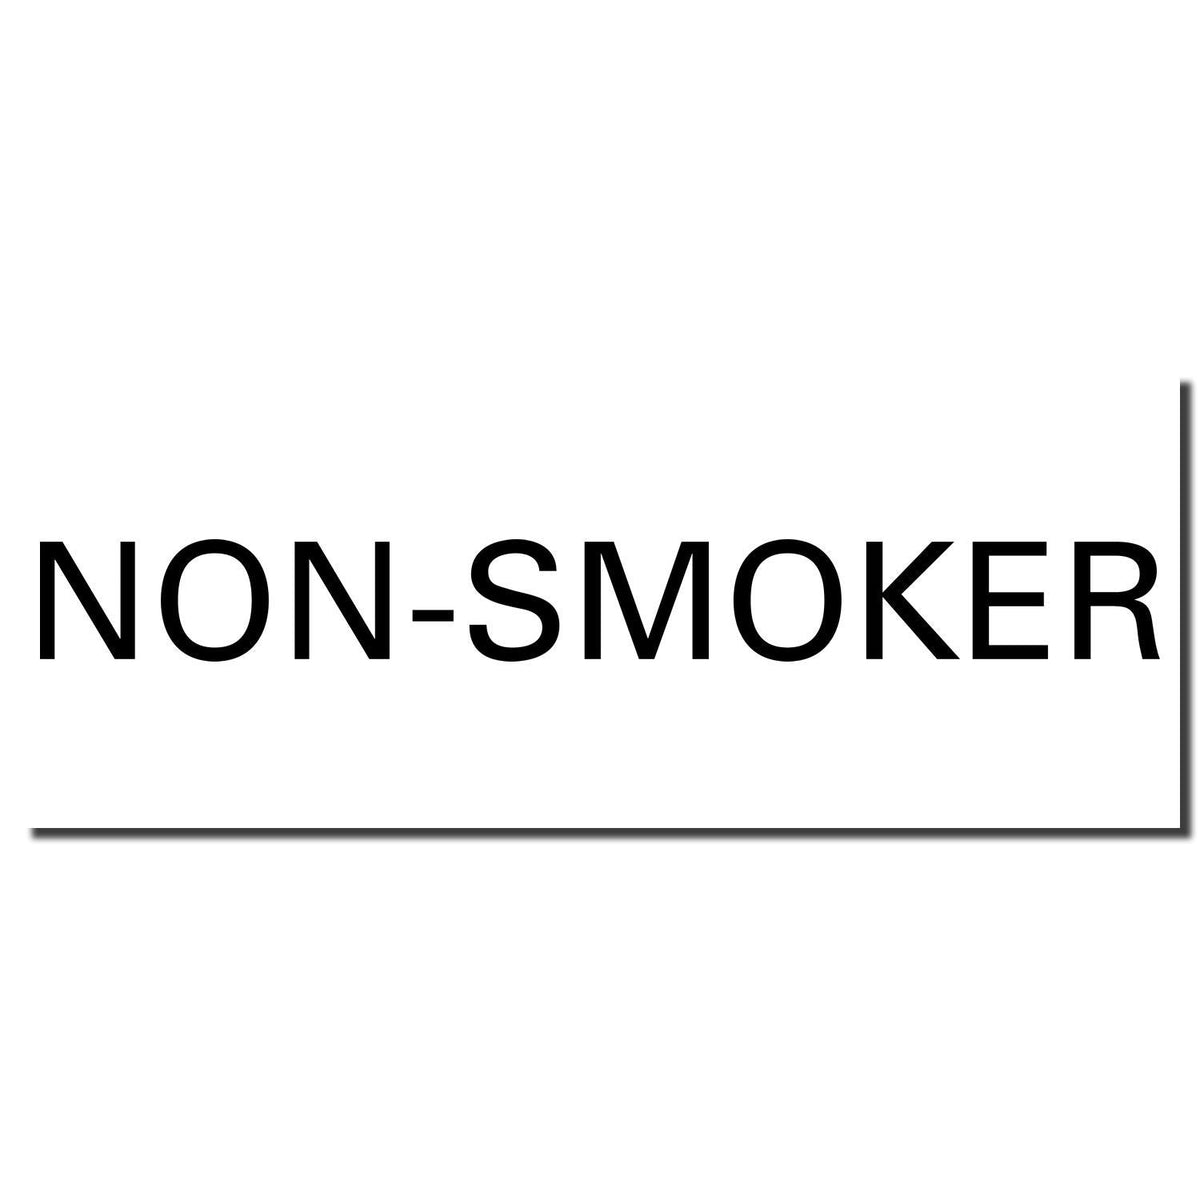 Enlarged Imprint Self-Inking Non-Smoker Stamp Sample